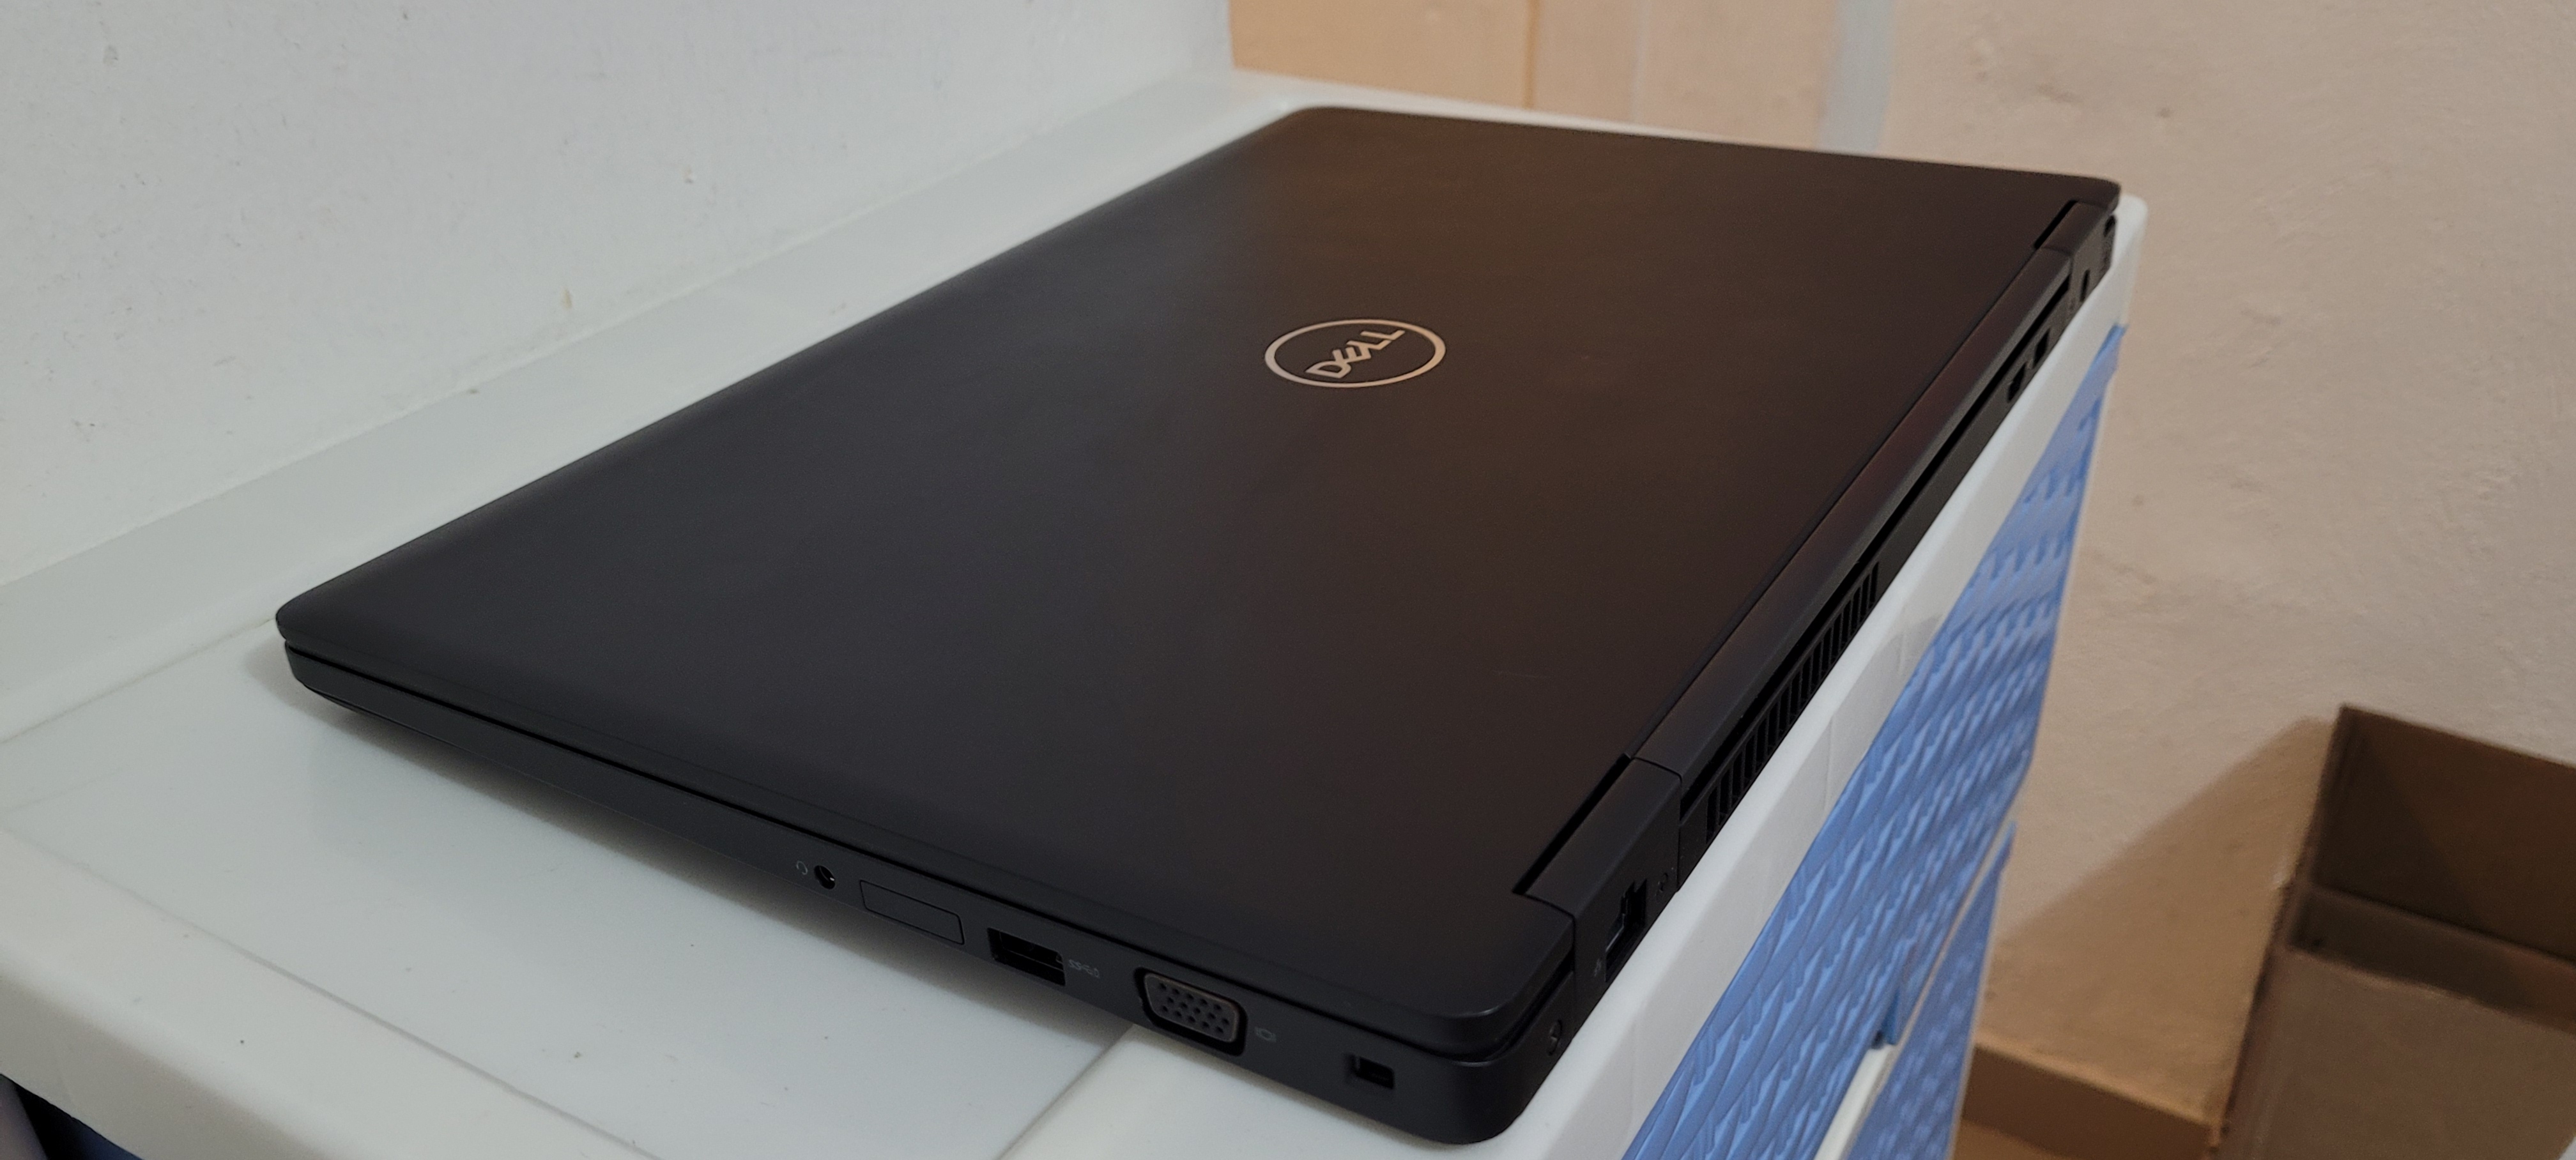 computadoras y laptops - Laptop Dell 5570 17 Pulg Core i7 6ta Ram 16gb Video intel Y Aty Radeon R7 2gb 2